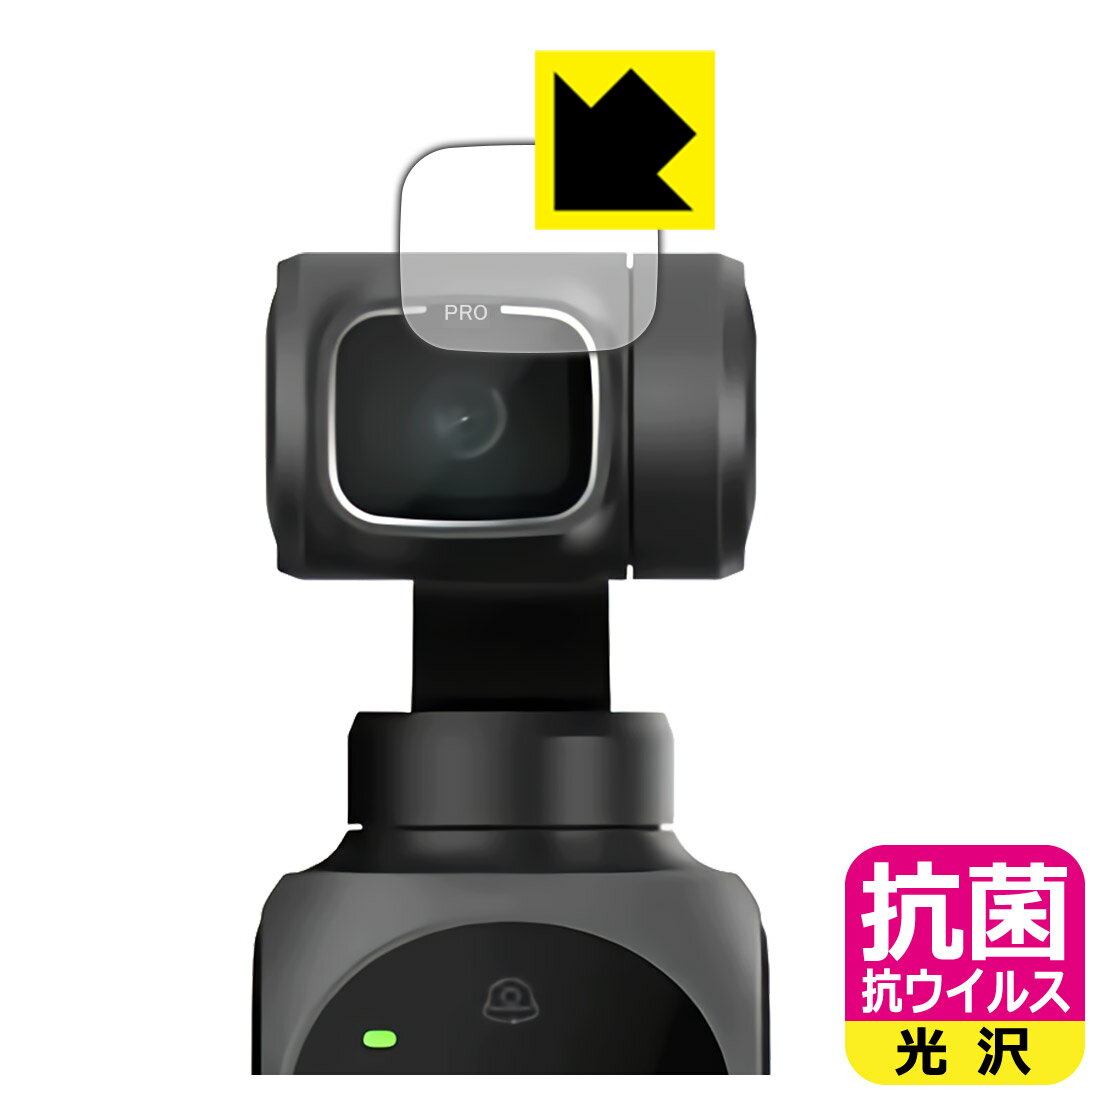 抗菌 抗ウイルス【光沢】保護フィルム FIMI PALM 2 Pro (カメラレンズ部用) 日本製 自社製造直販